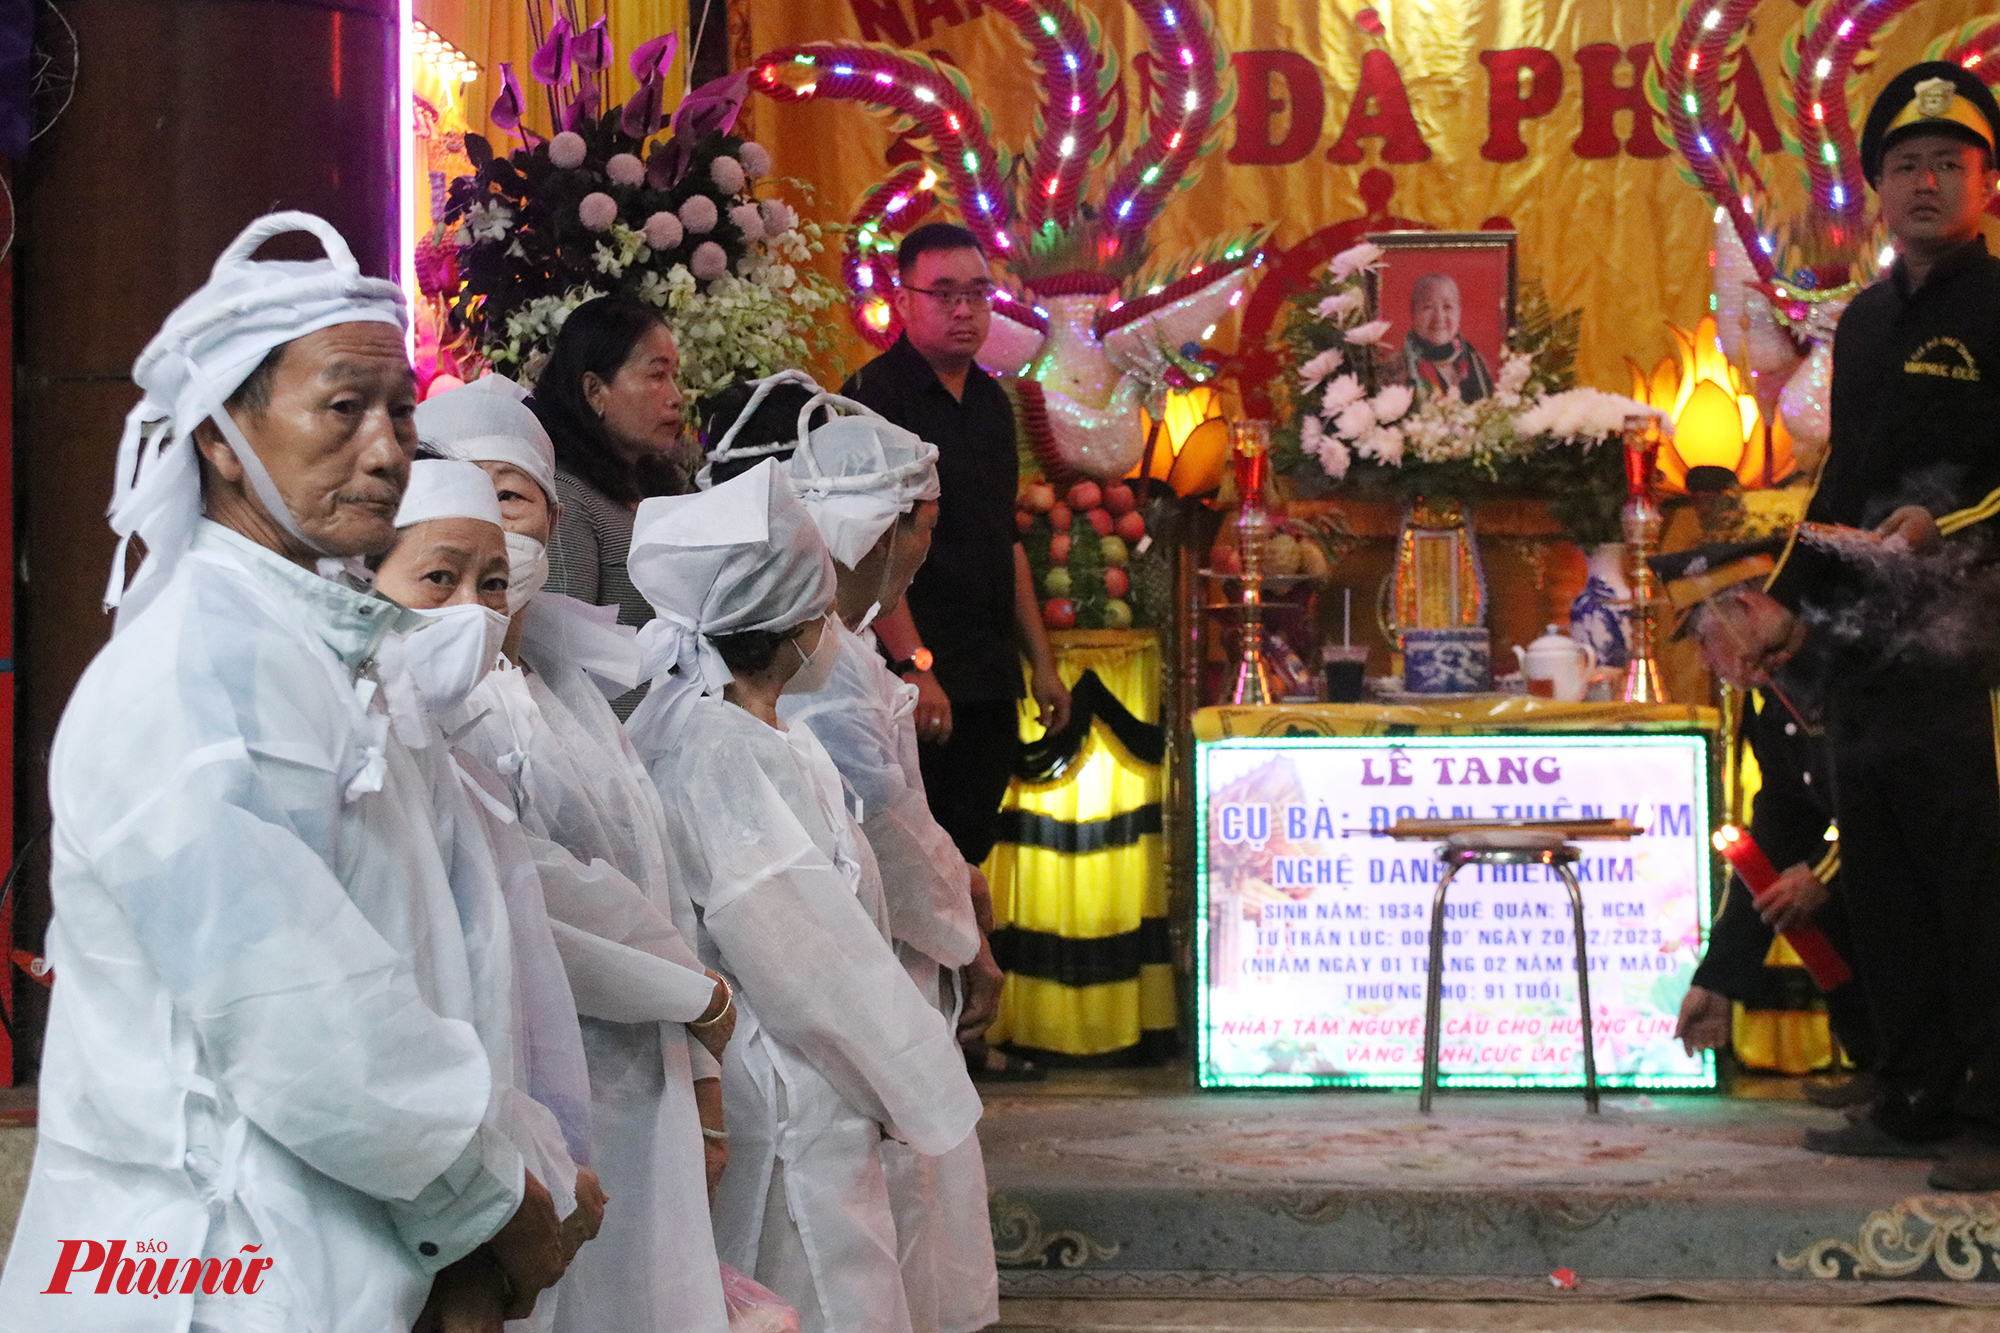 Sau lễ động quan, linh cữu cố nghệ sĩ được đưa đi hoả táng tại Đa Phước, huyện Bình Chánh. 